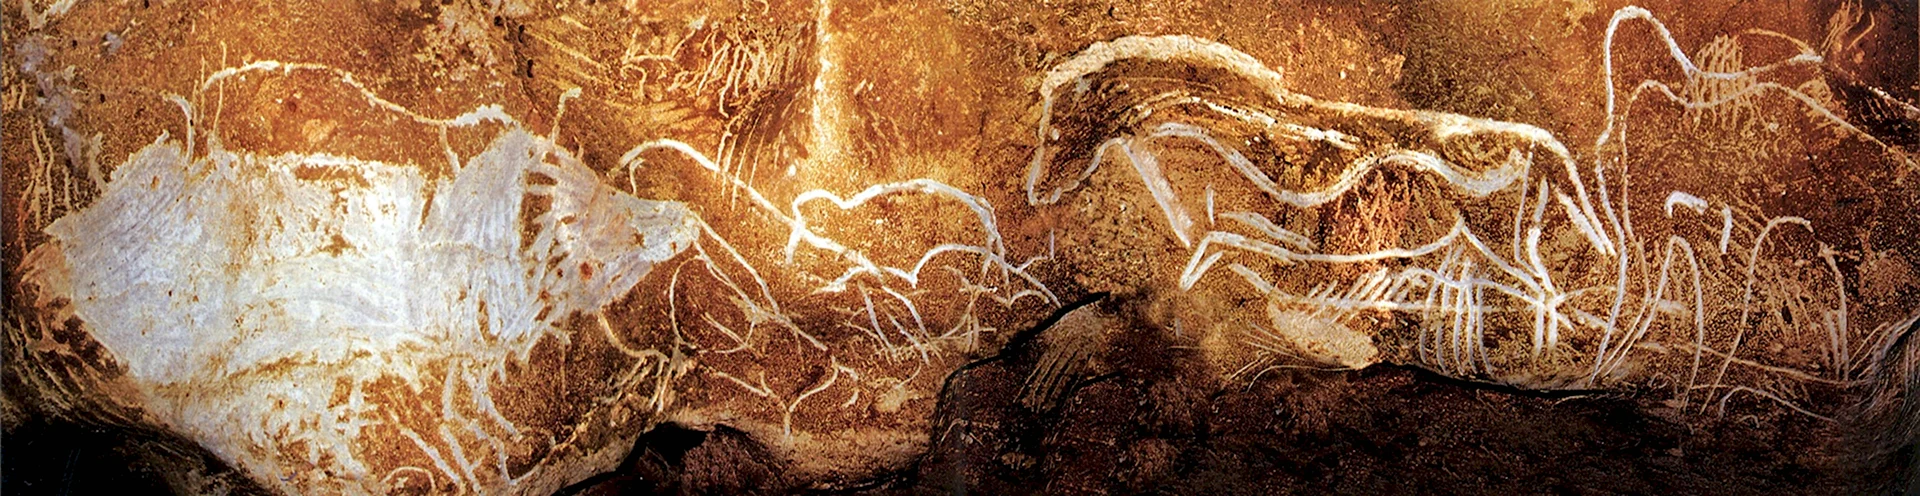 Четыре лошади пещера Шове Франция ок 37-33 тыс до.н.э